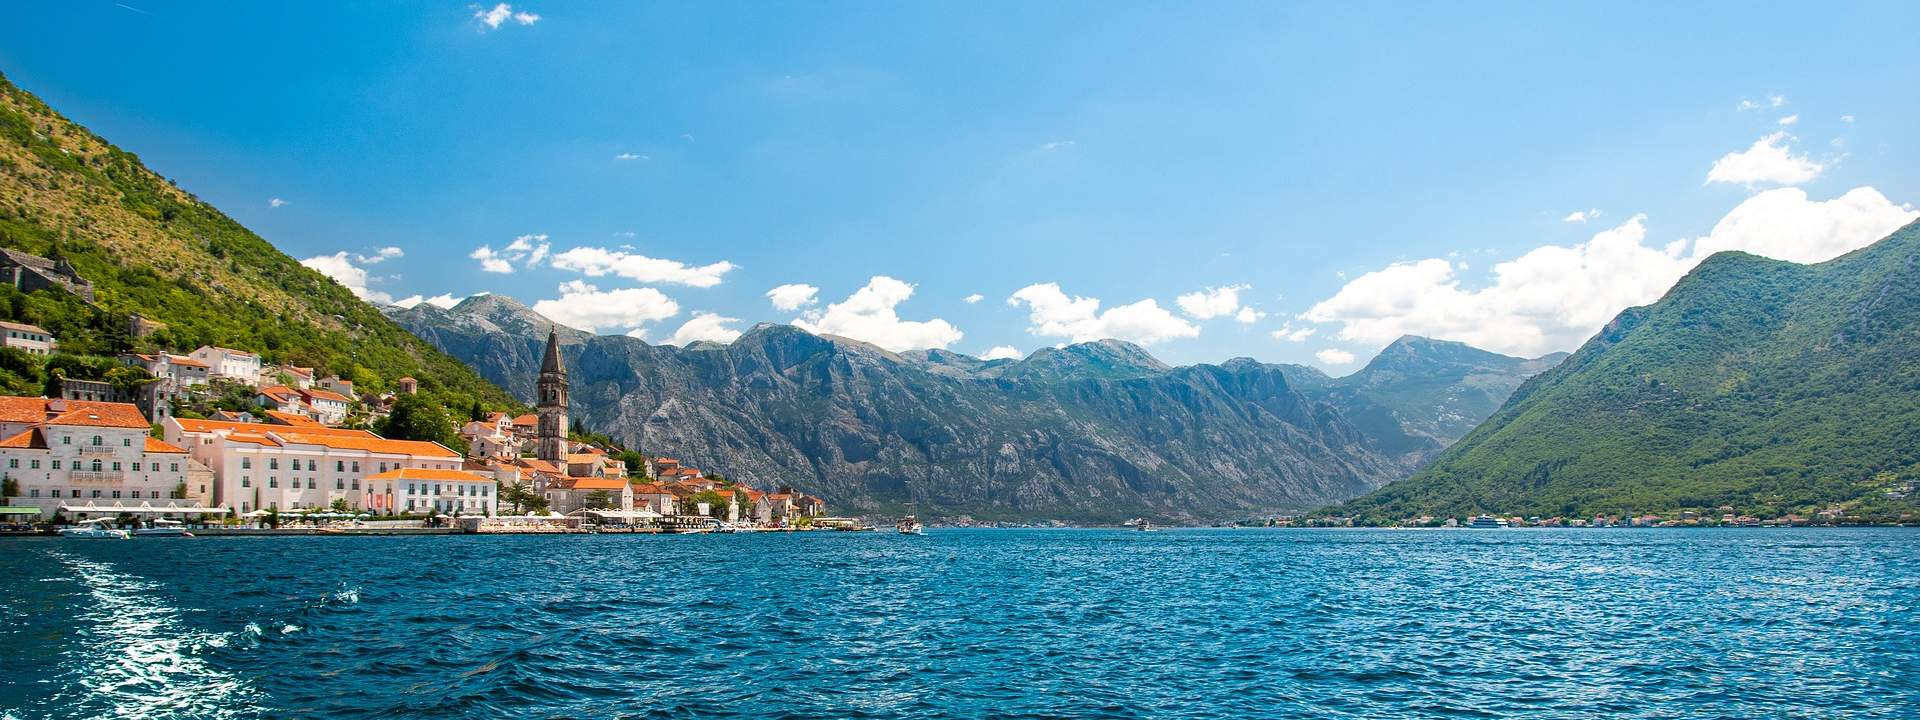 Entdecken Sie Montenegro von der Adriaküste bis zur Bucht von Kotor